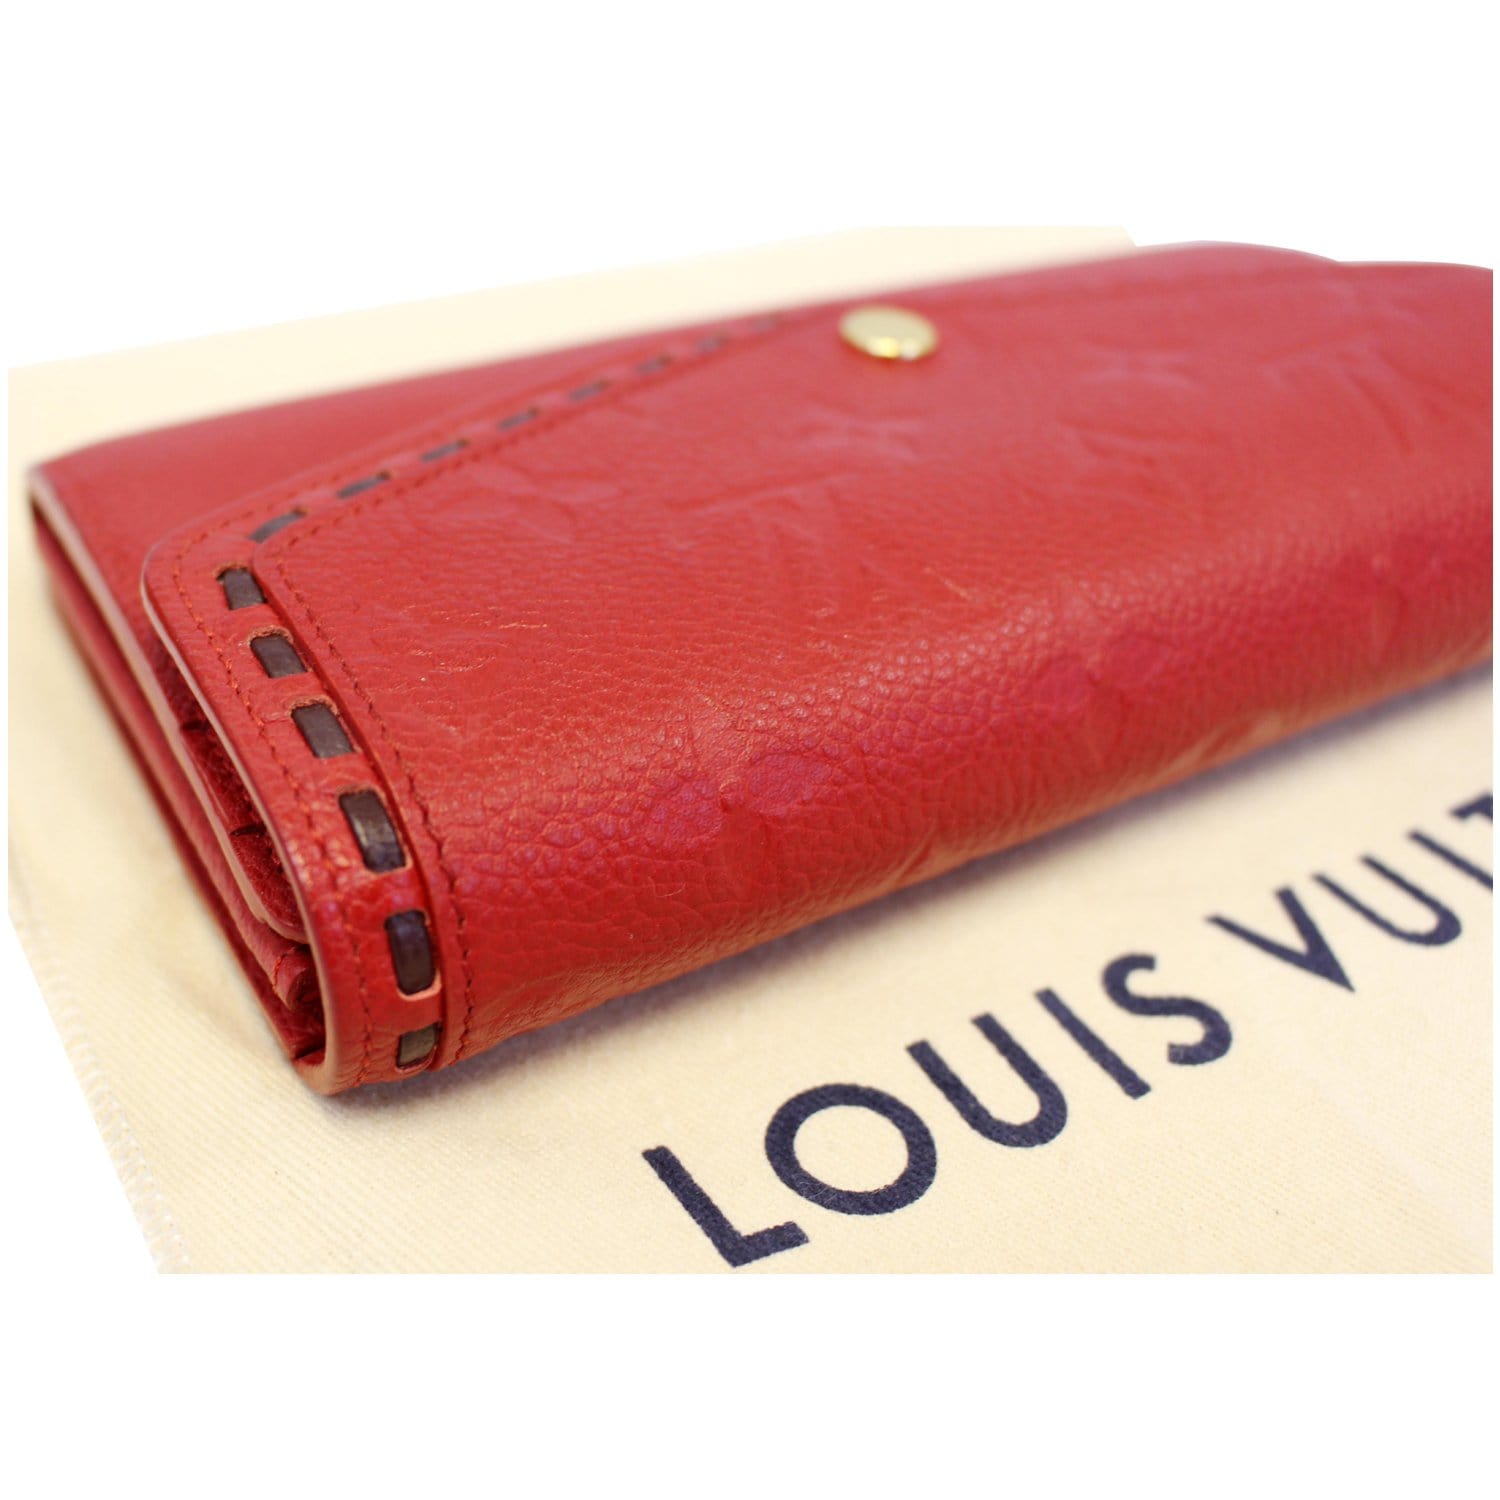 Louis Vuitton Scarlet Monogram Empreinte Leather Clémence Wallet